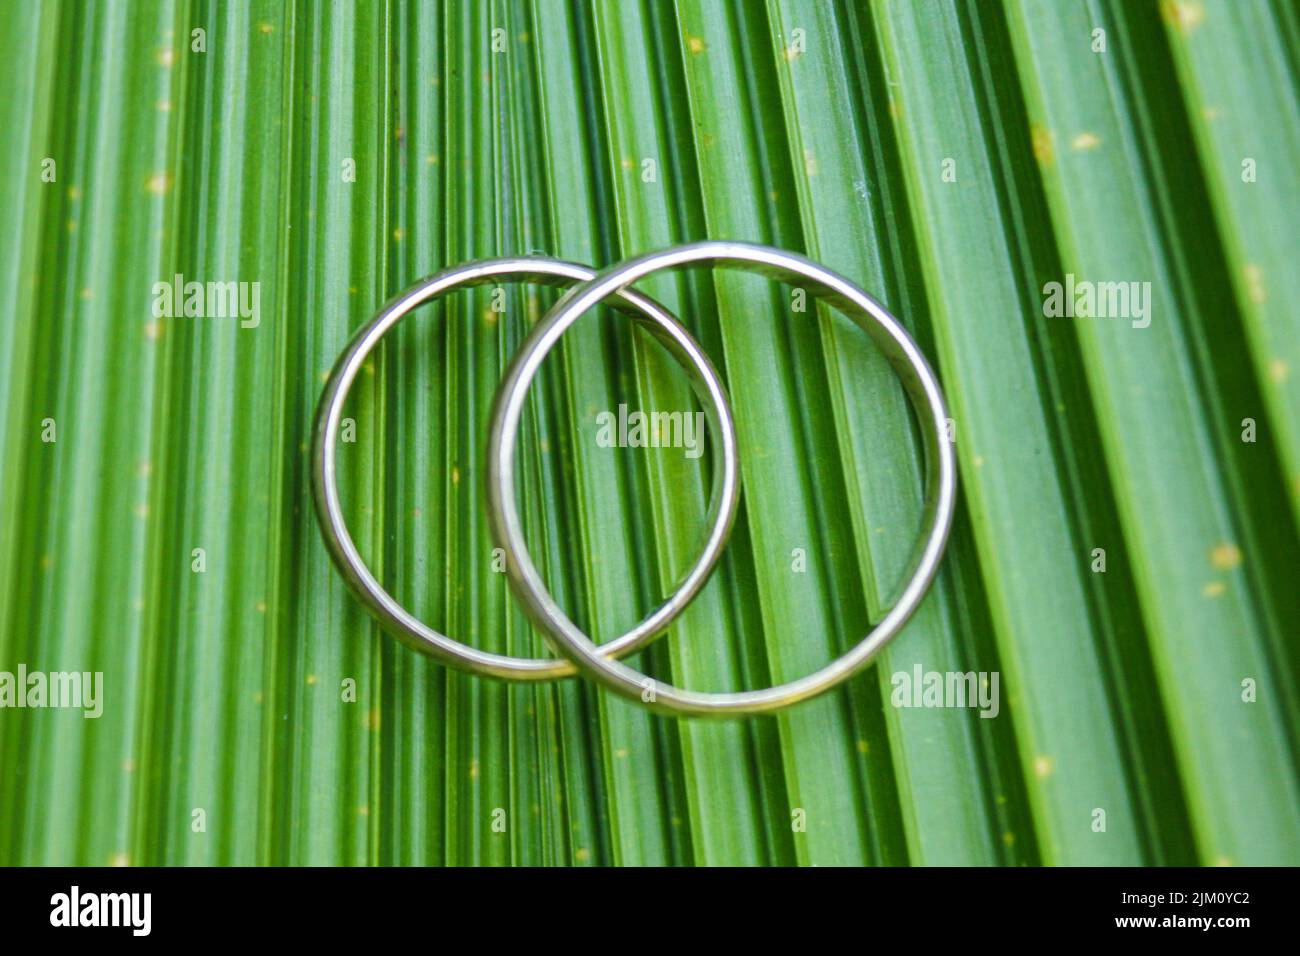 Un gros plan de bracelets métalliques sur une feuille verte Banque D'Images